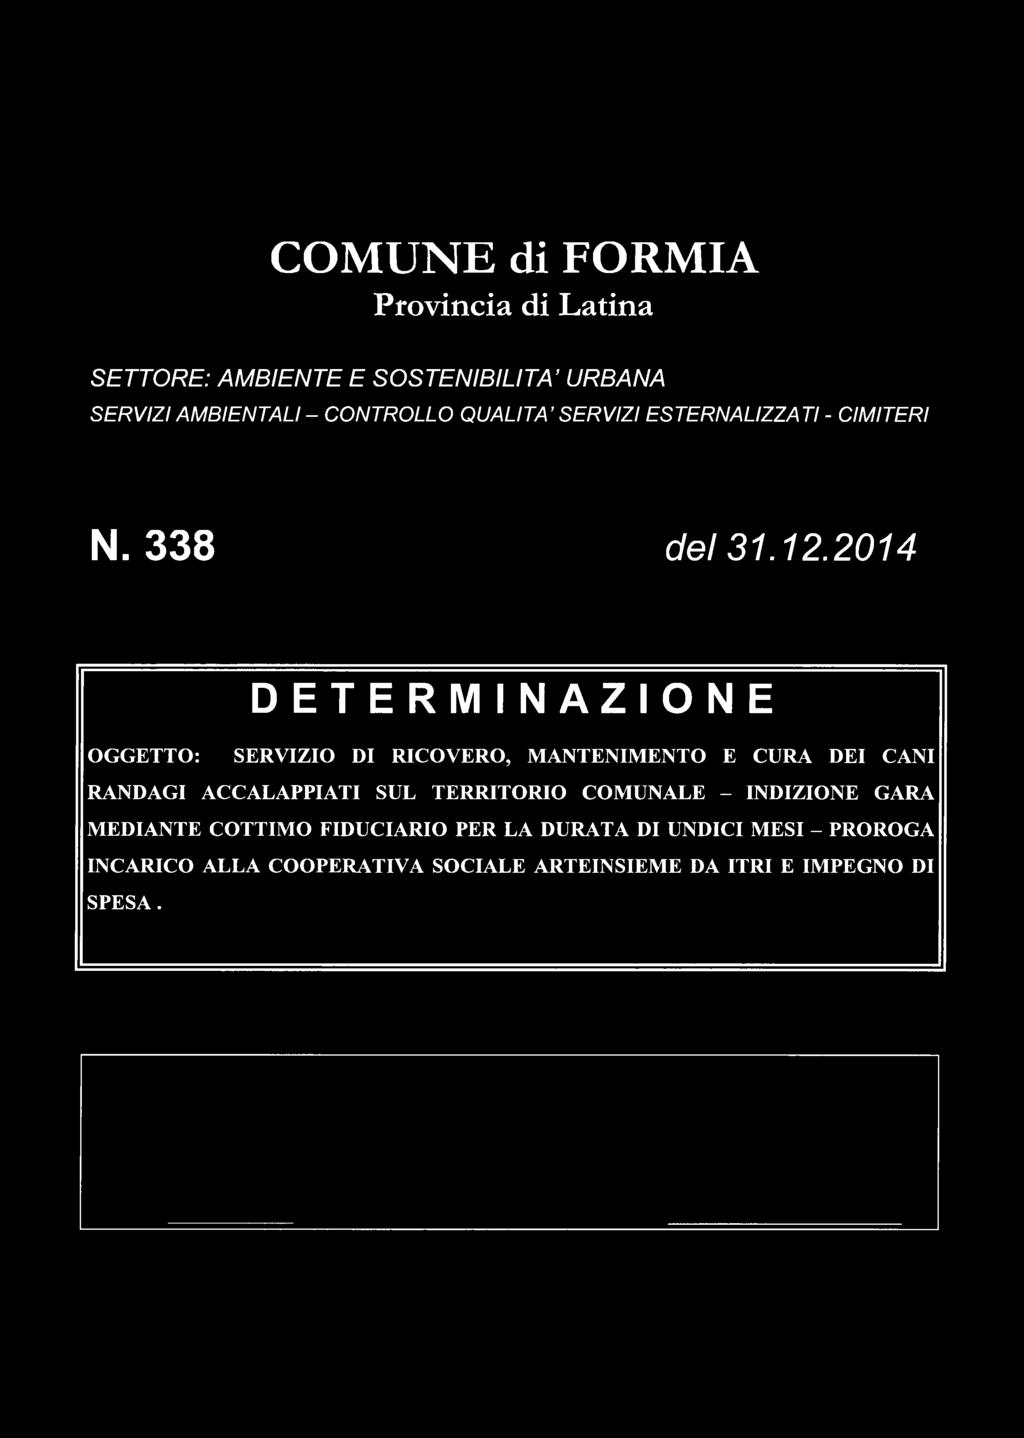 2014 DETERMINAZIONE OGGETTO: SERVIZIO DI RICOVERO, MANTENIMENTO E CURA DEI CANI RANDAGI ACCALAPPIATI SUL